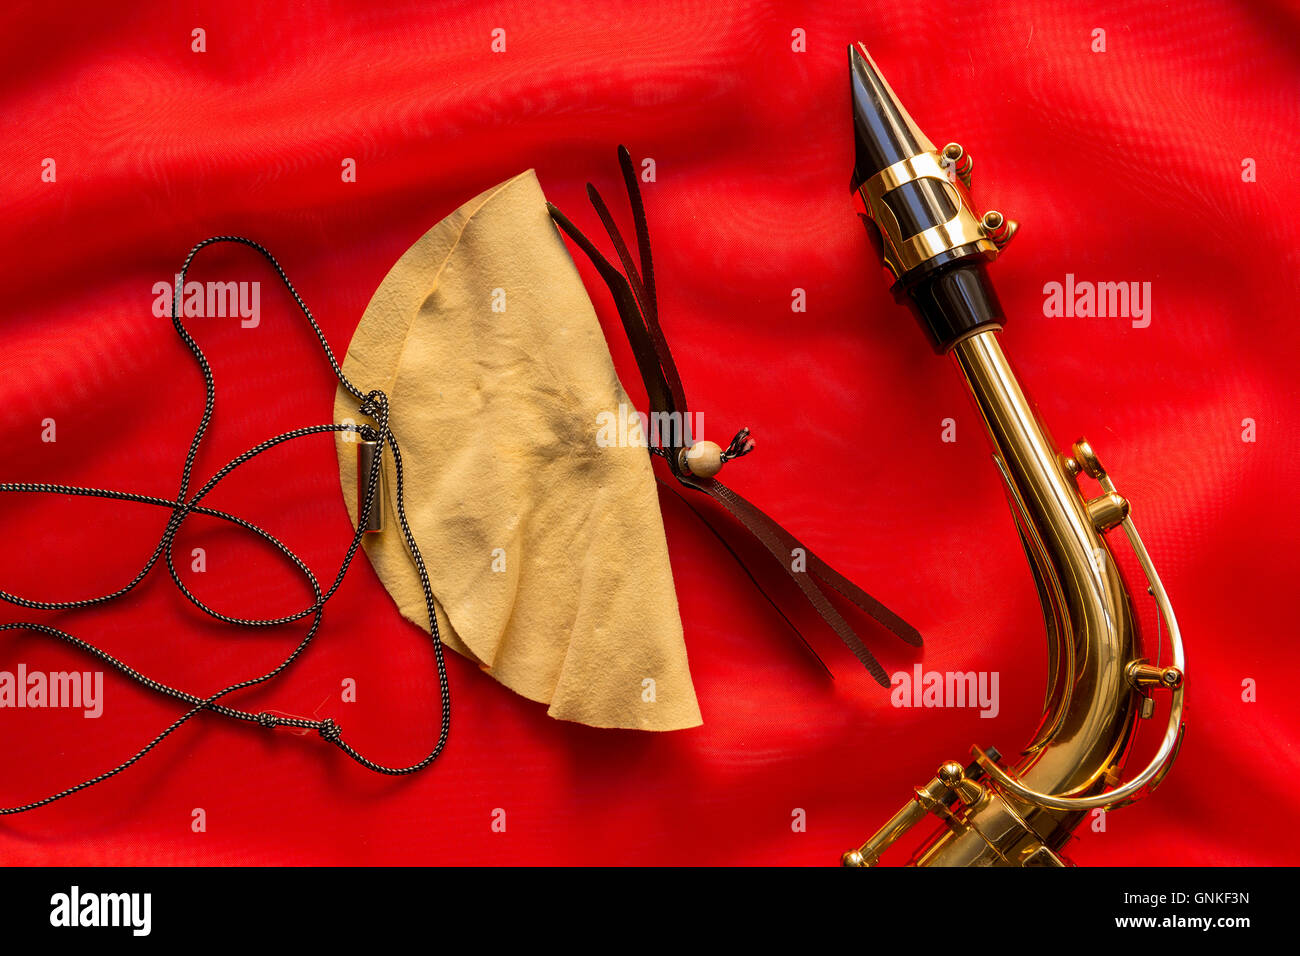 Spazzola in pelle scamosciata e sassofono boccaglio su uno sfondo rosso Foto Stock